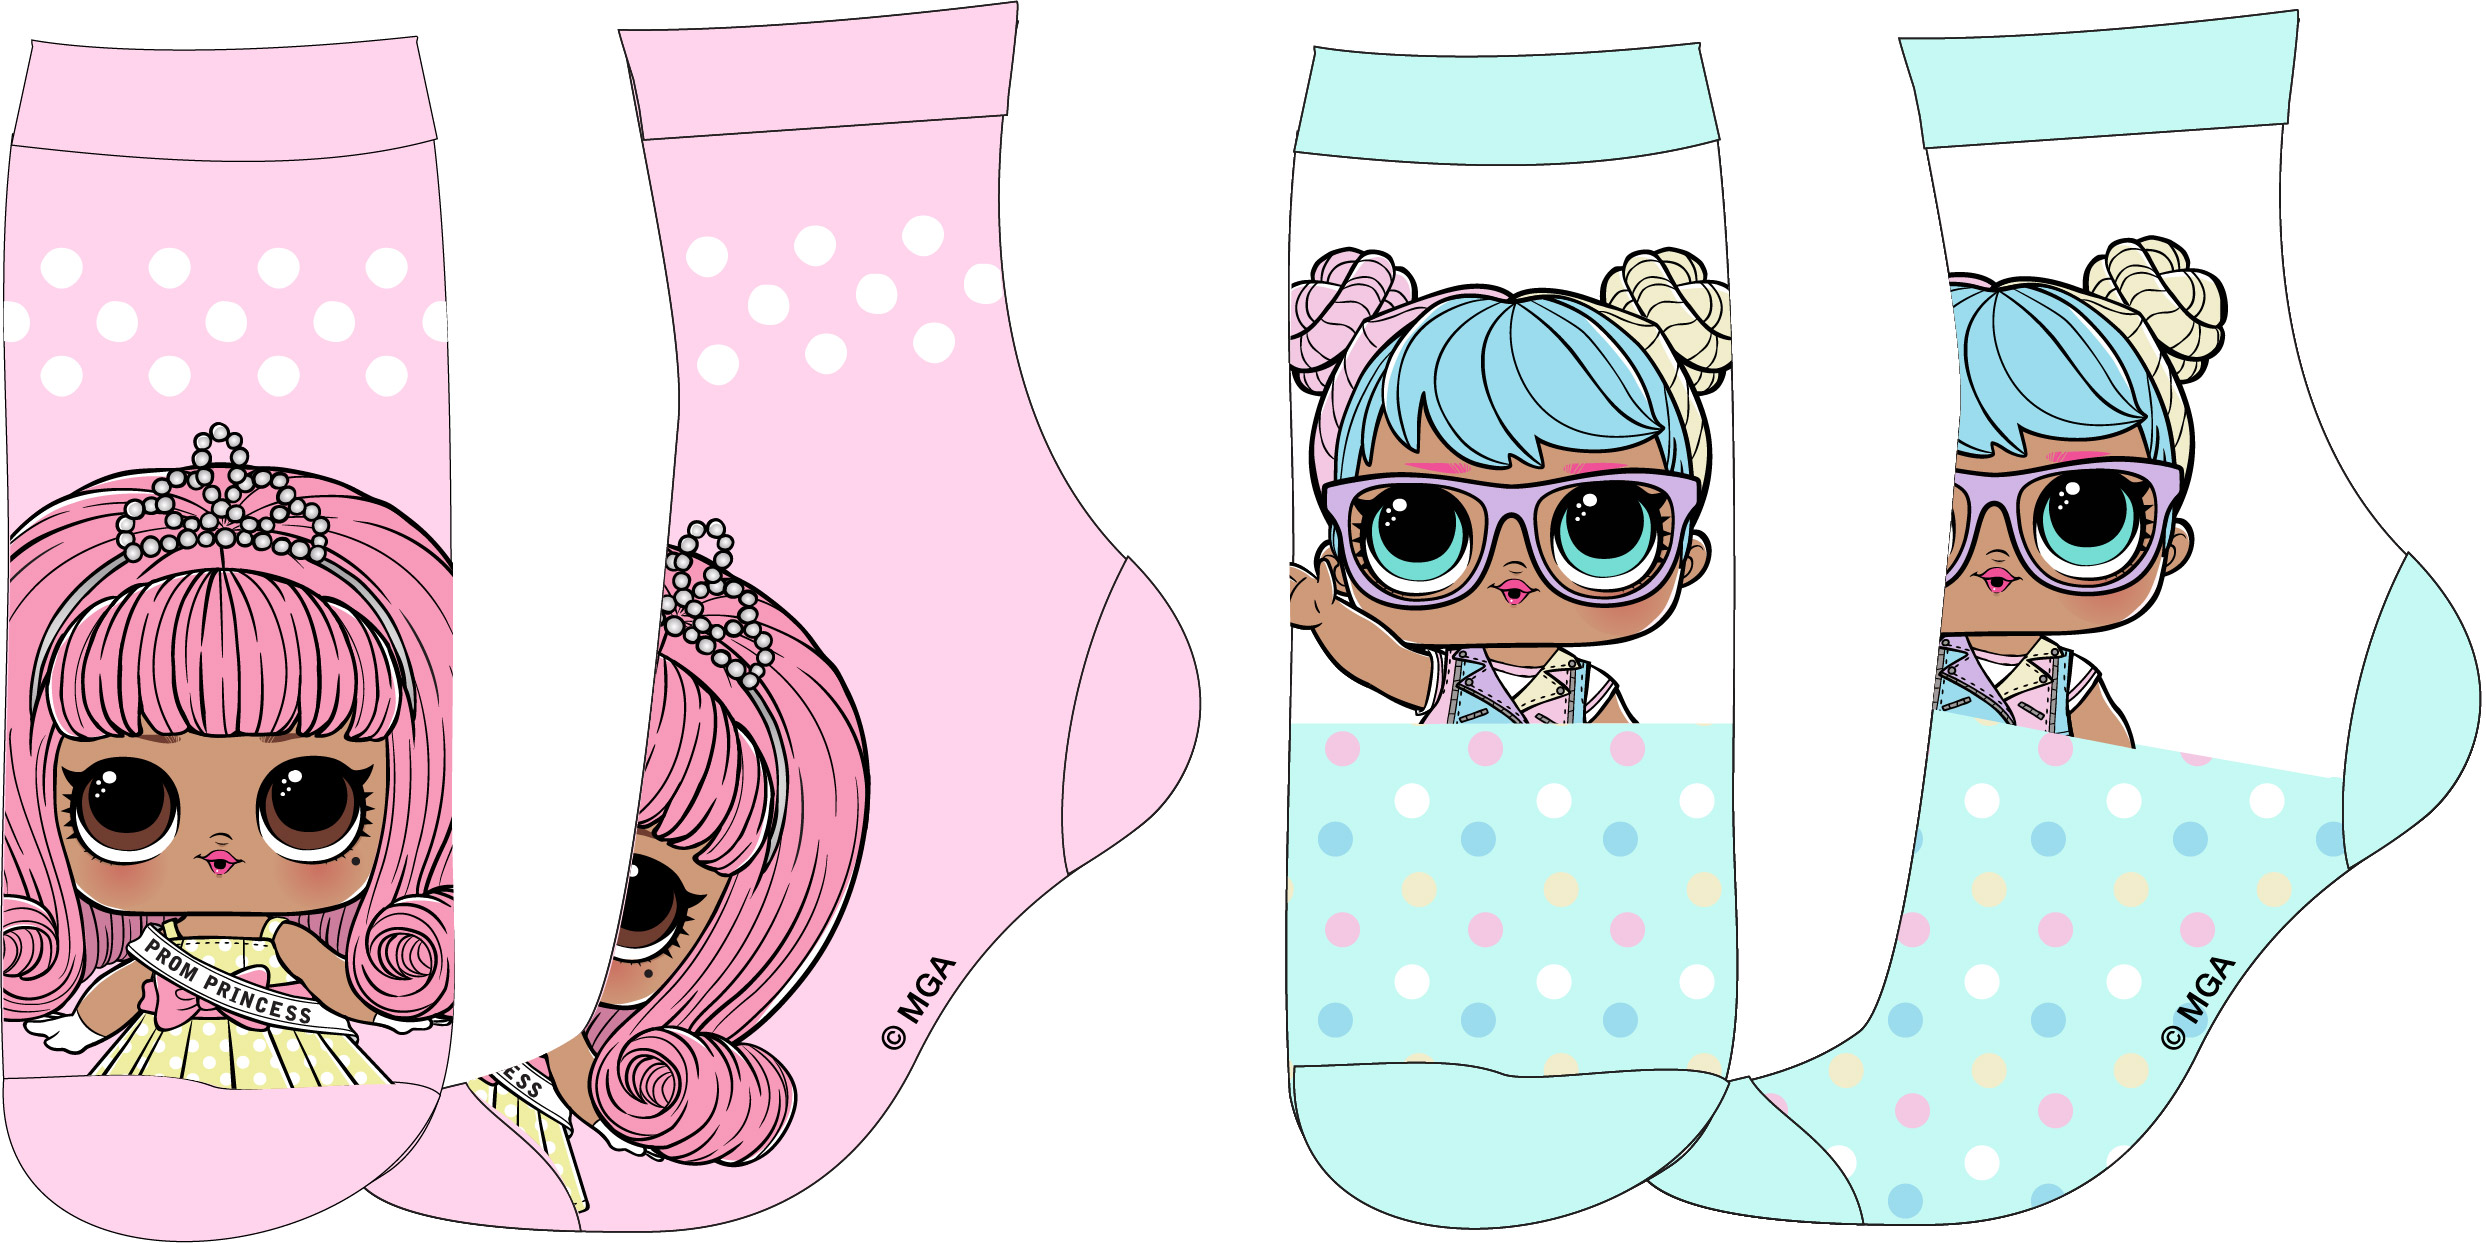 LOL. Surprise- licence Dívčí ponožky - LOL.Surprise 5234315, růžová / mentolová Barva: Mix barev, Velikost: 23-26